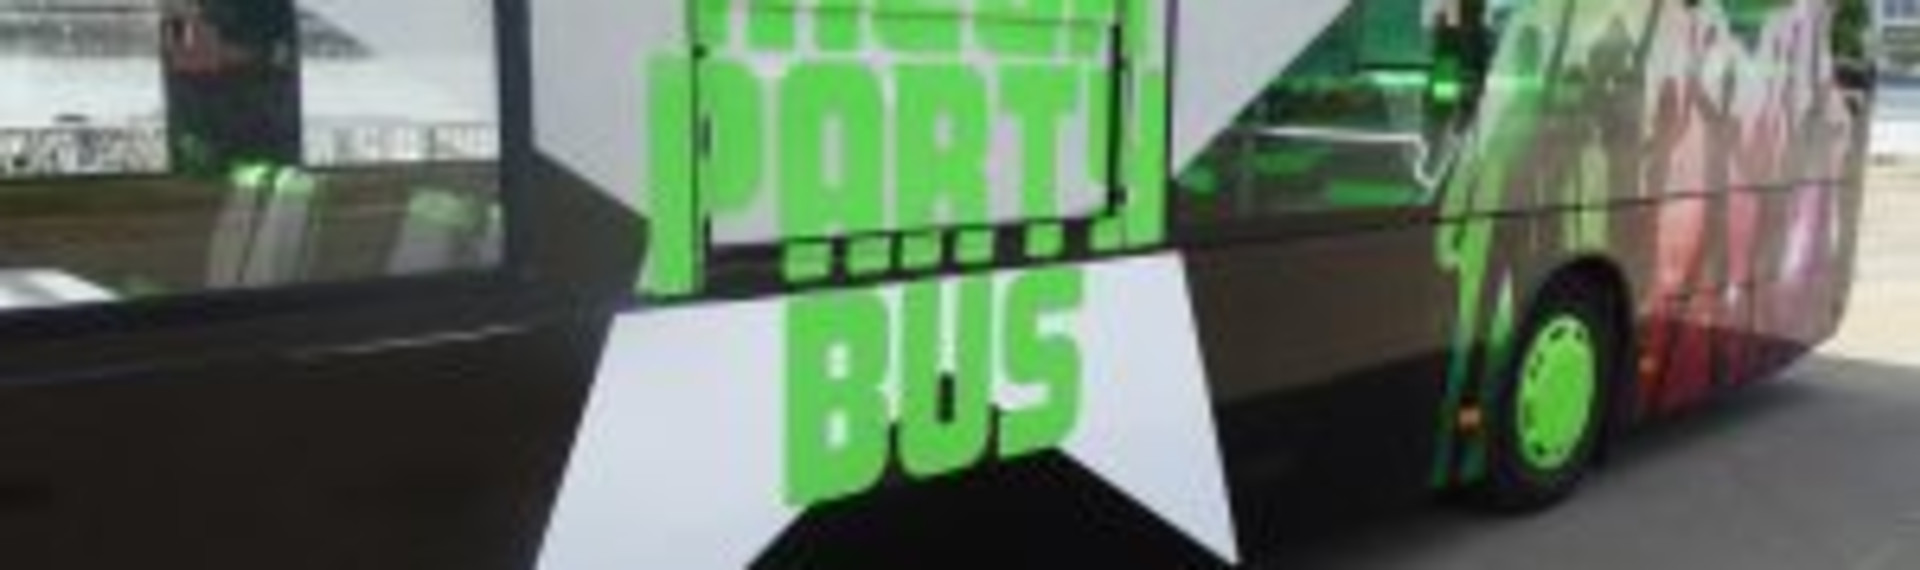 Mega-Partybus Düsseldorf | Jetzt mit Pissup Reisen buchen!